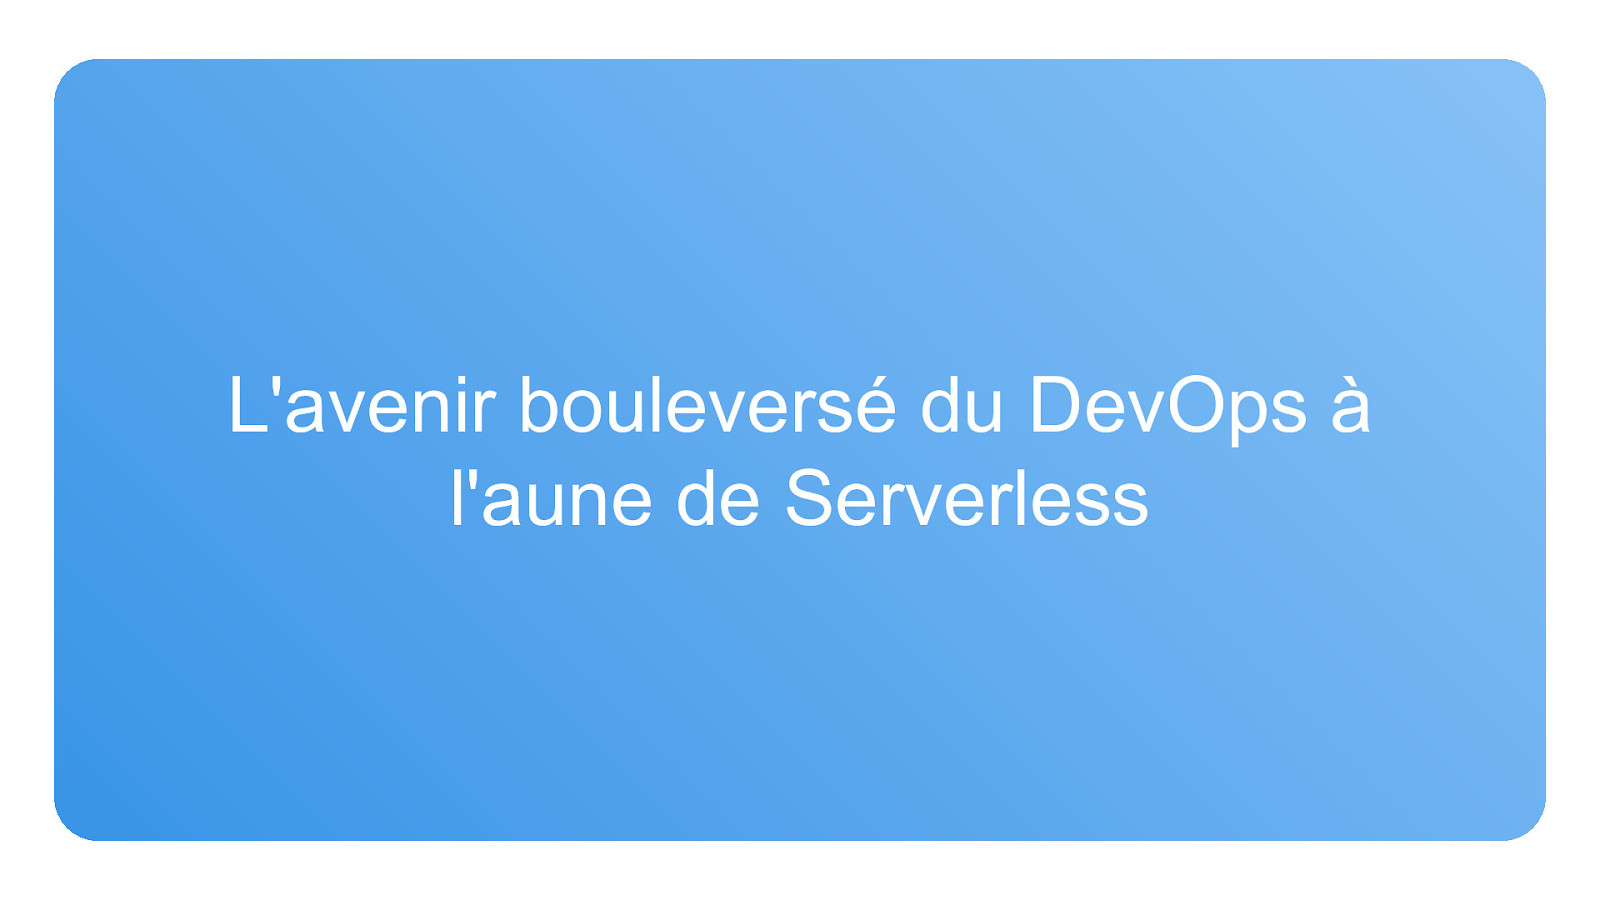 The shaken future of DevOps in the light of Serverless (French Talk)